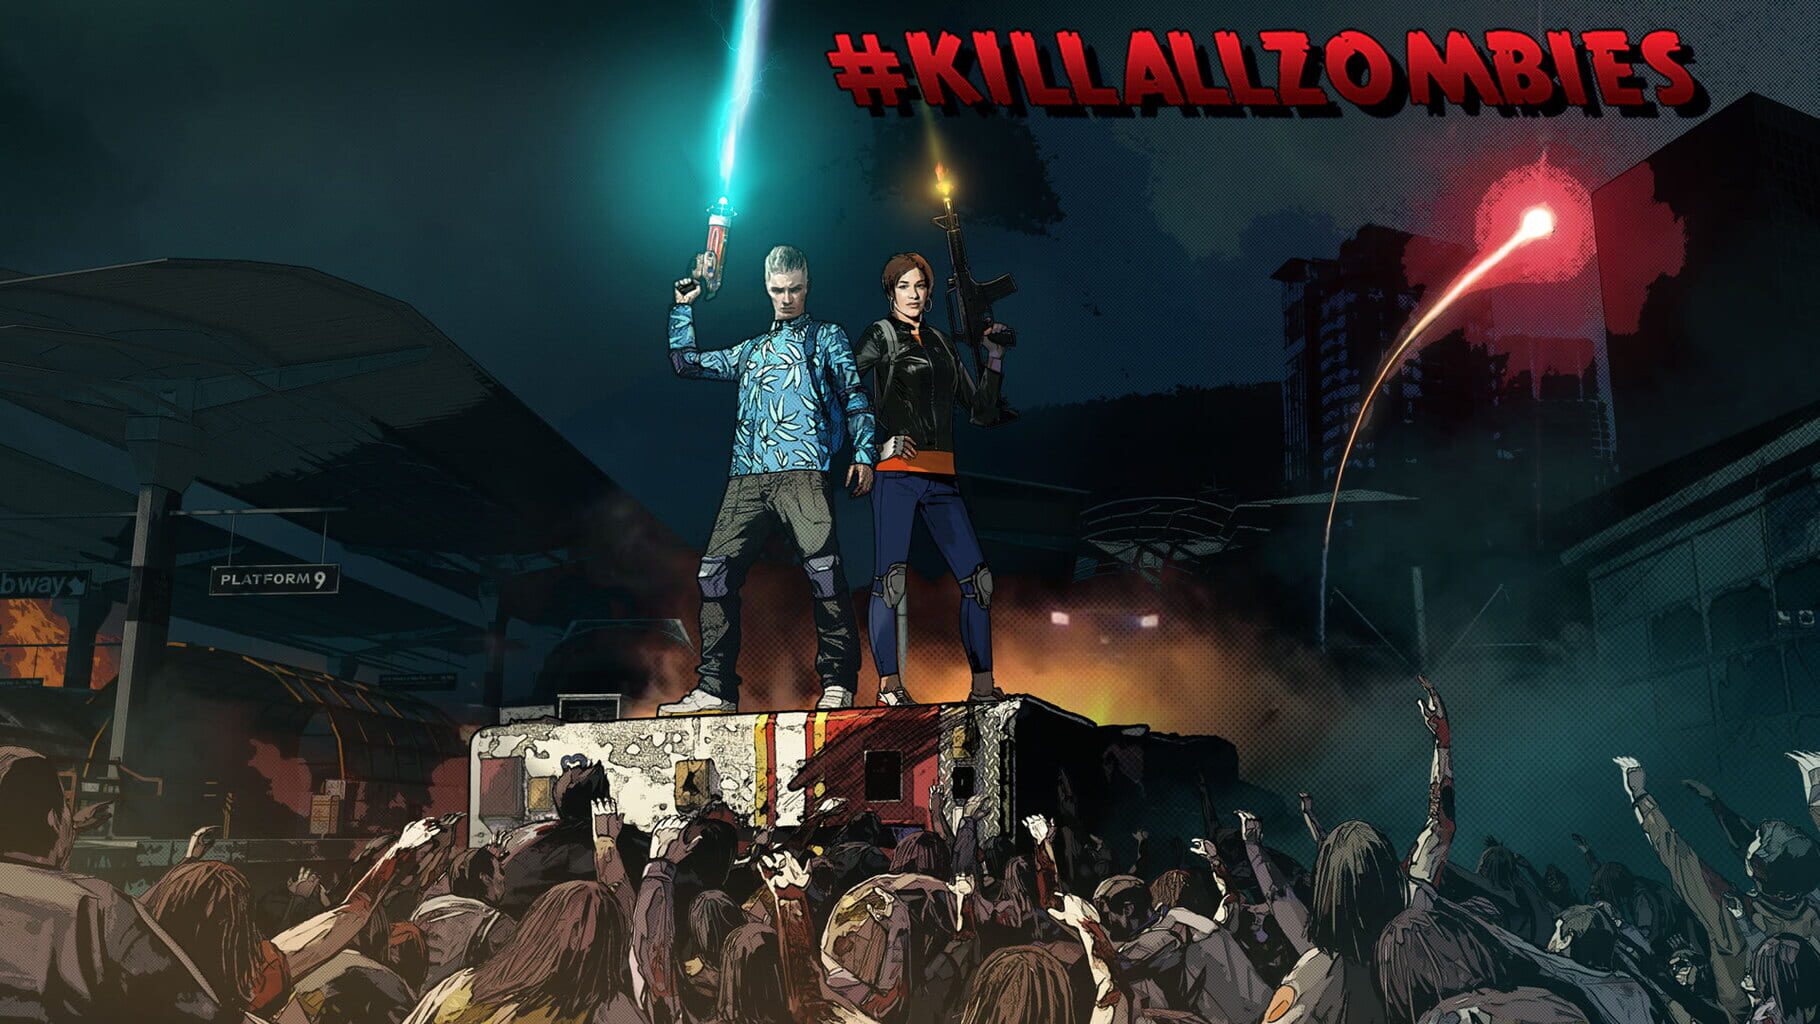 #Killallzombies artwork